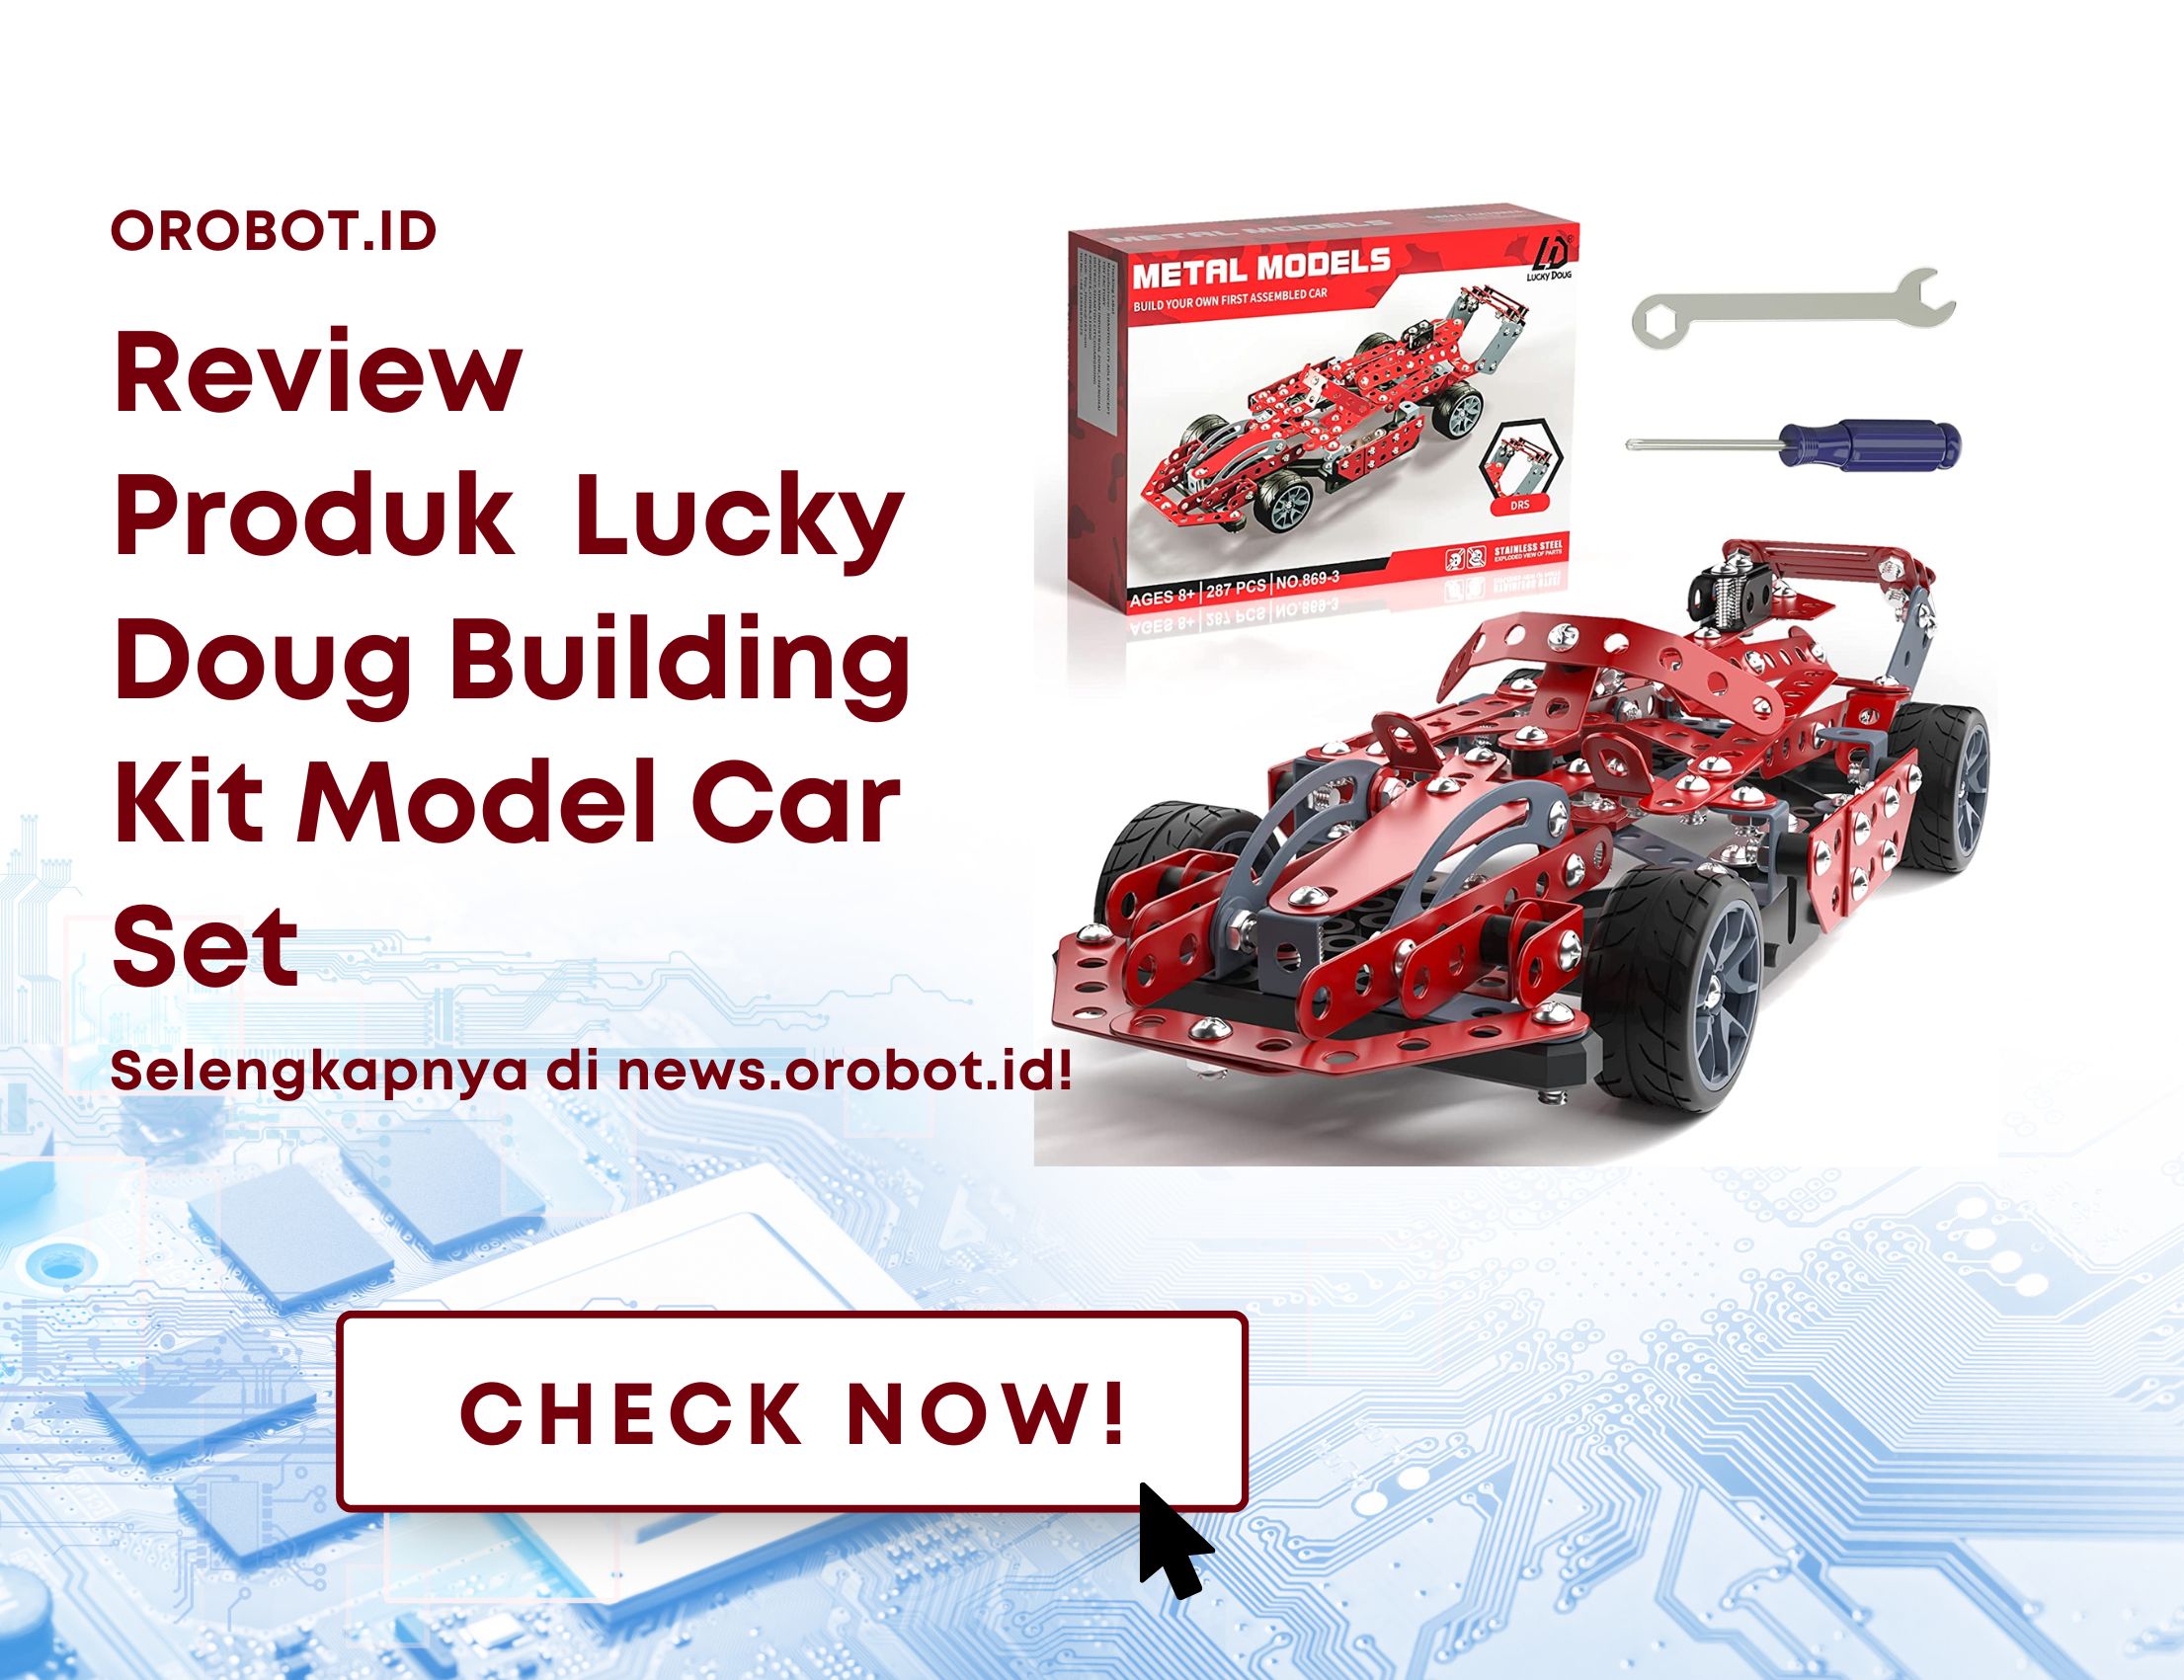 Review Produk Robot Lucky Doug Building Kit Model Car Set, Membangun Kreativitas Anak